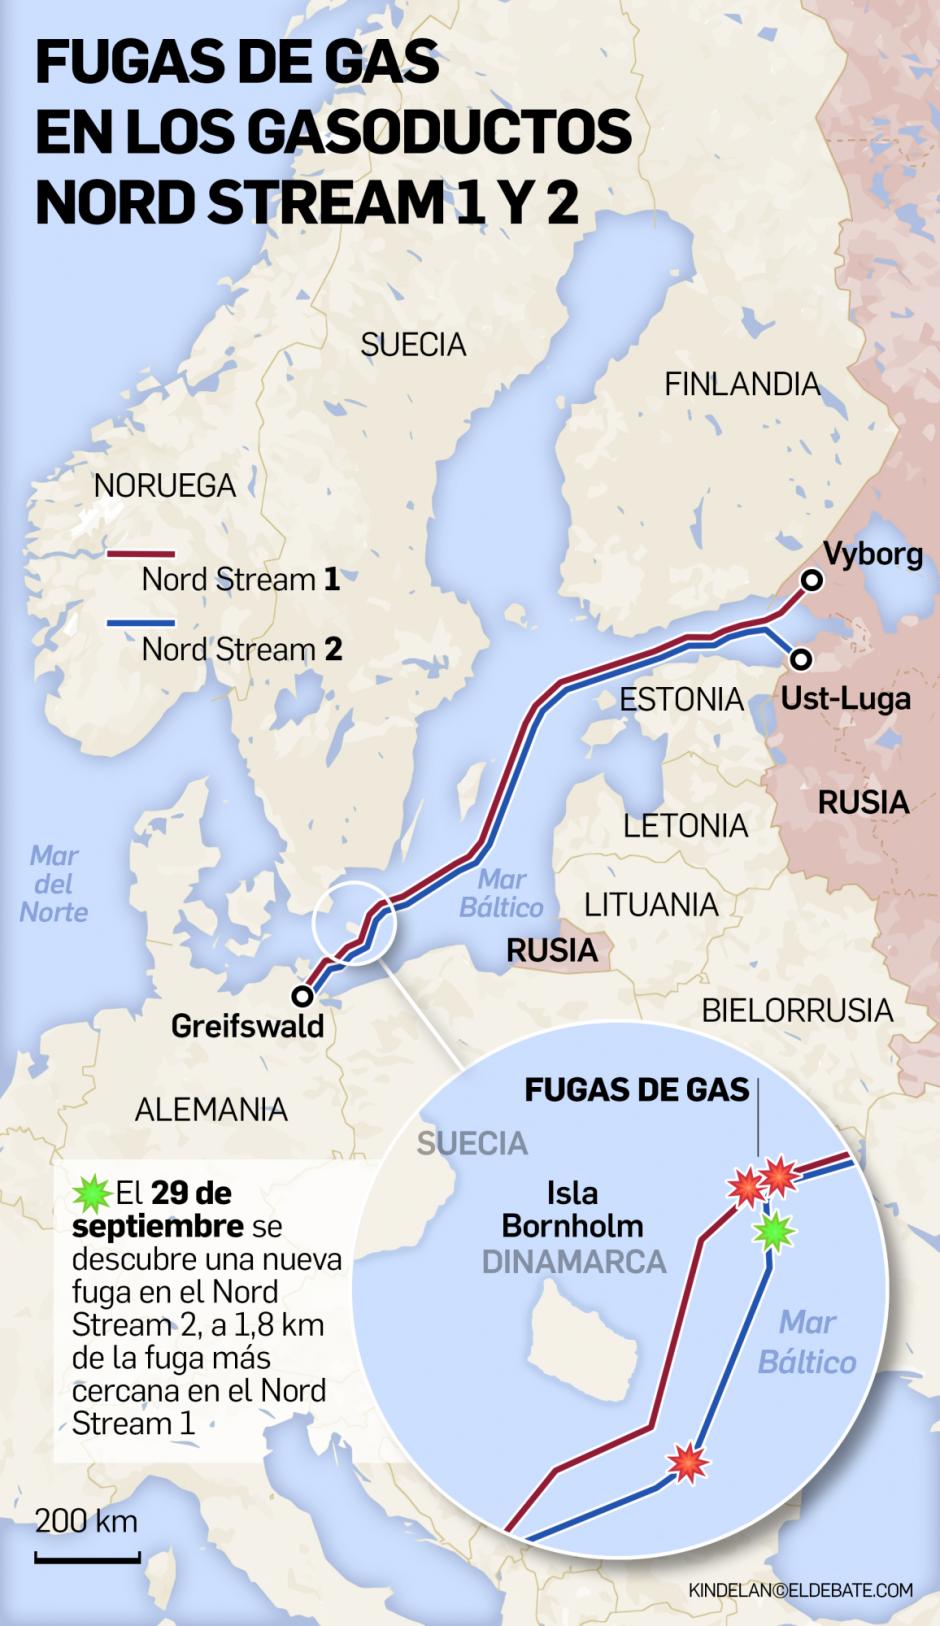 Mapa actualizado de las fugas de gas en los gasoductos Nord Stream 1 y 2